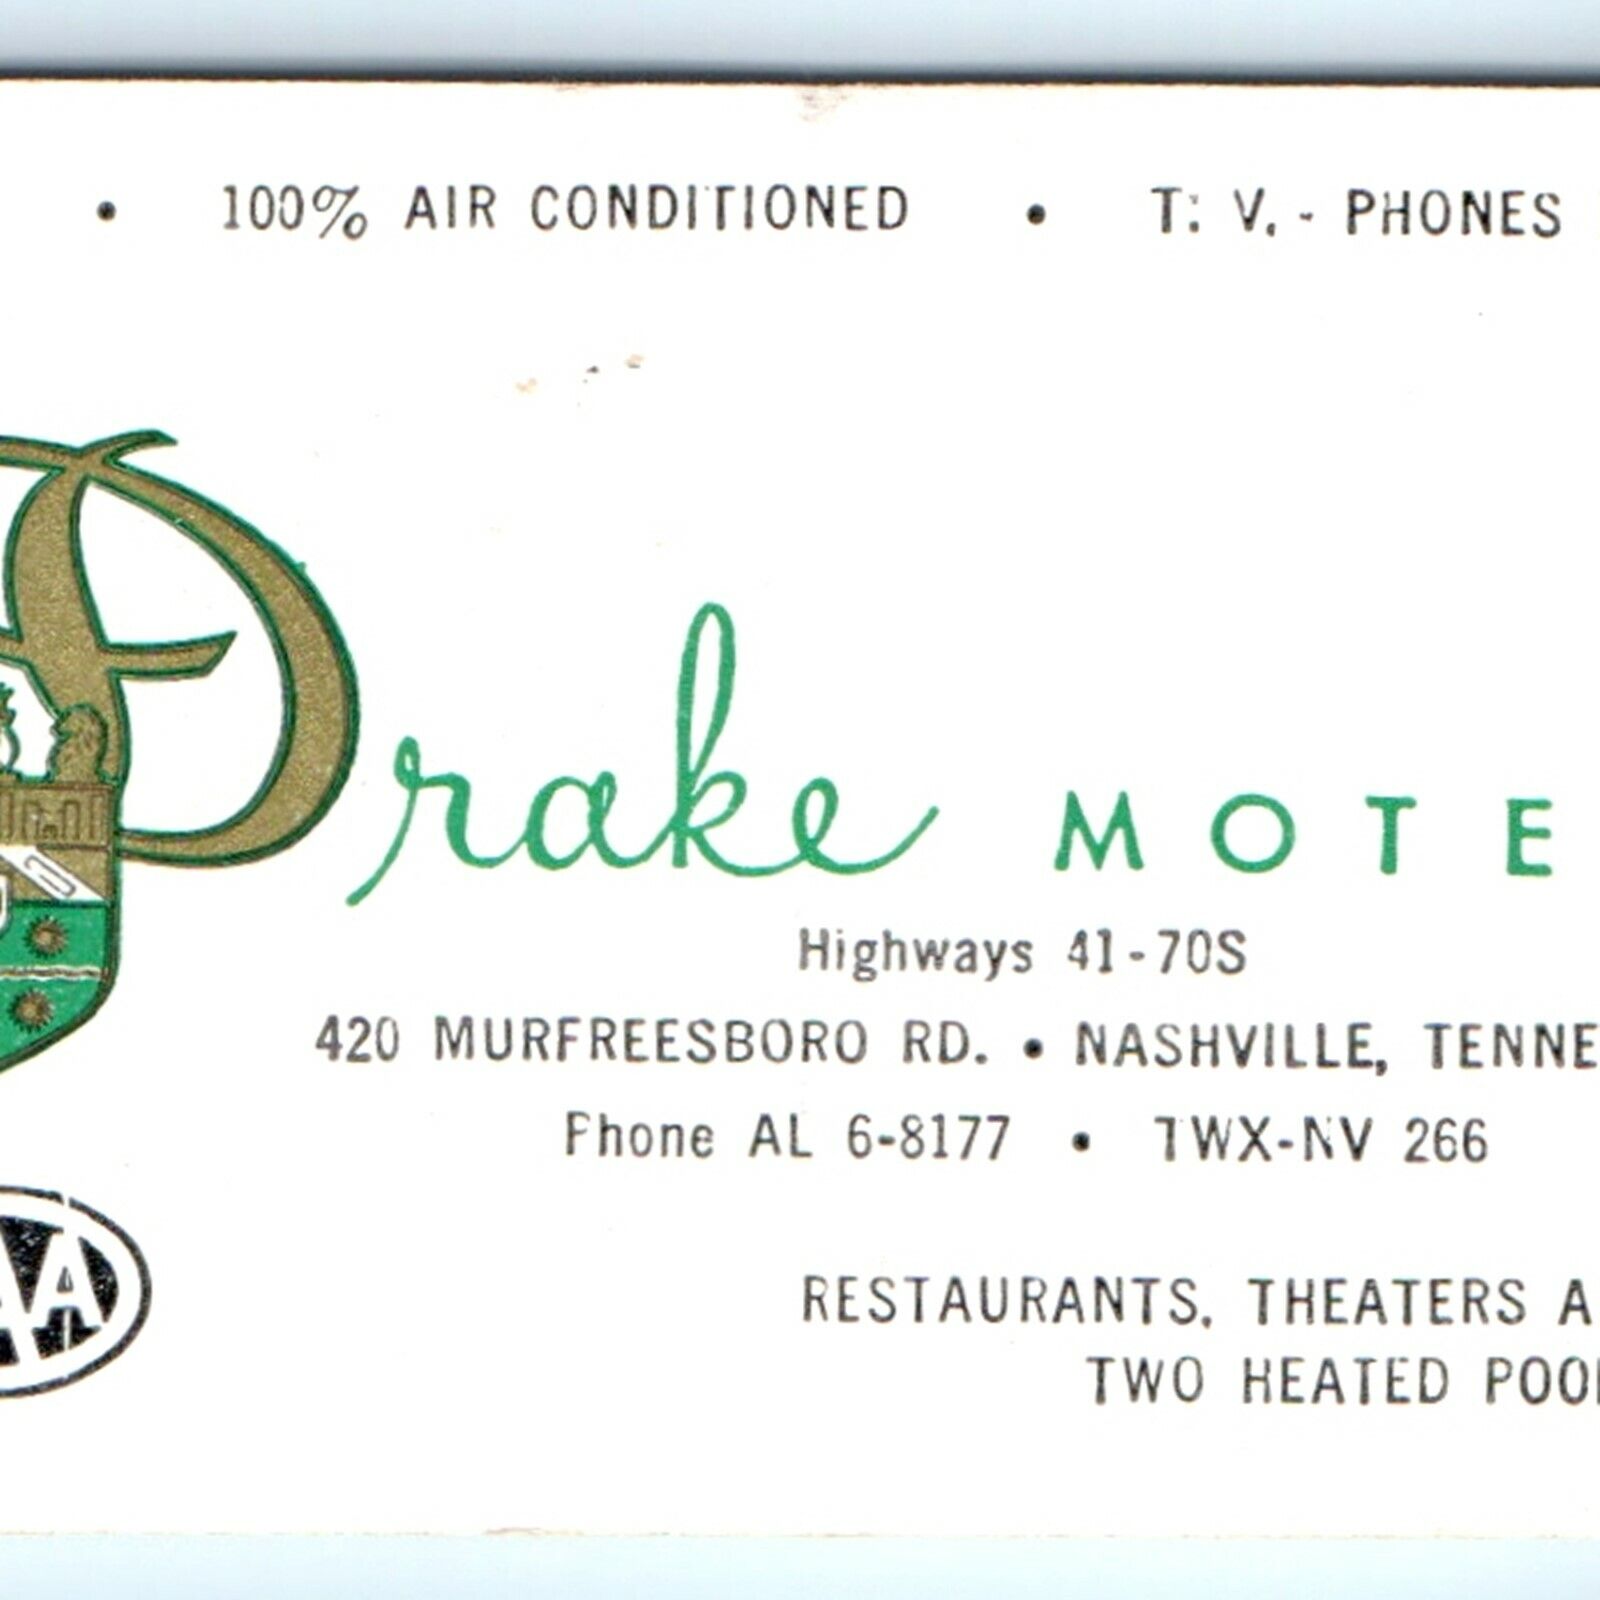 1960 Nashville, TN Drake Motel Business Card Calendar - 420 Murfreesboro Rd. C25